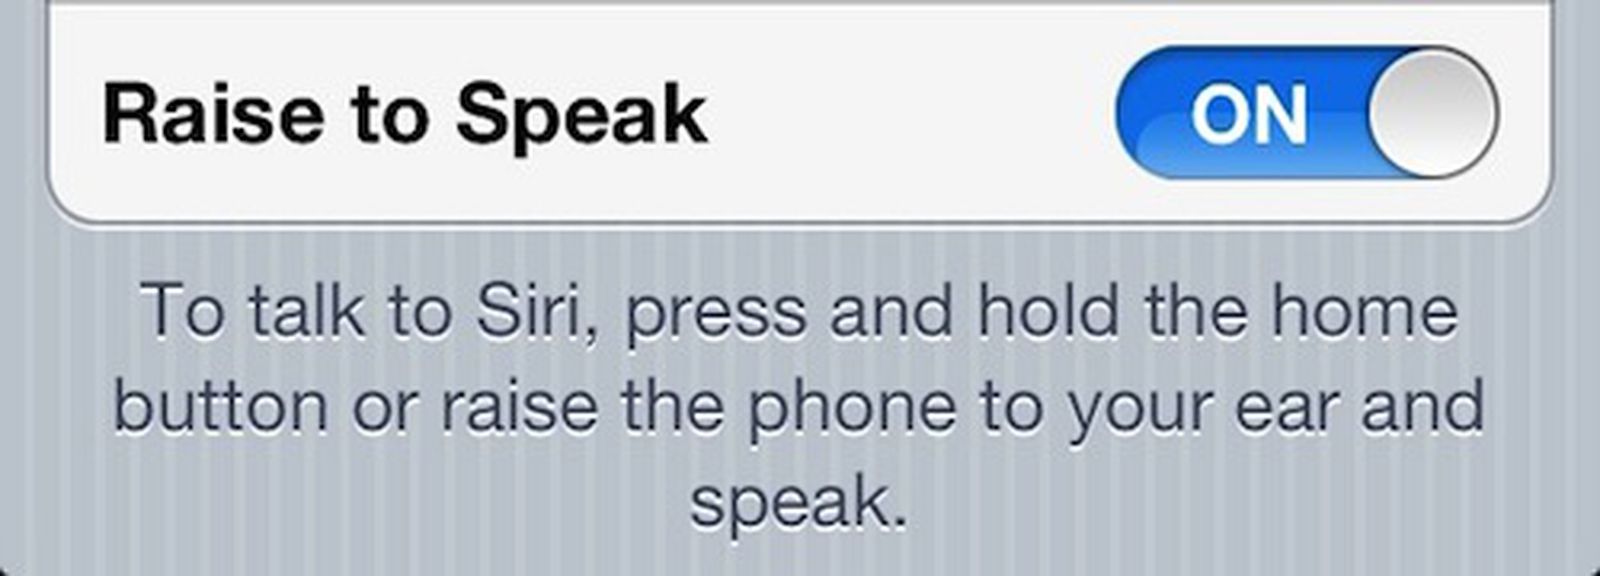 Raise to speak. Call speaking iphone.